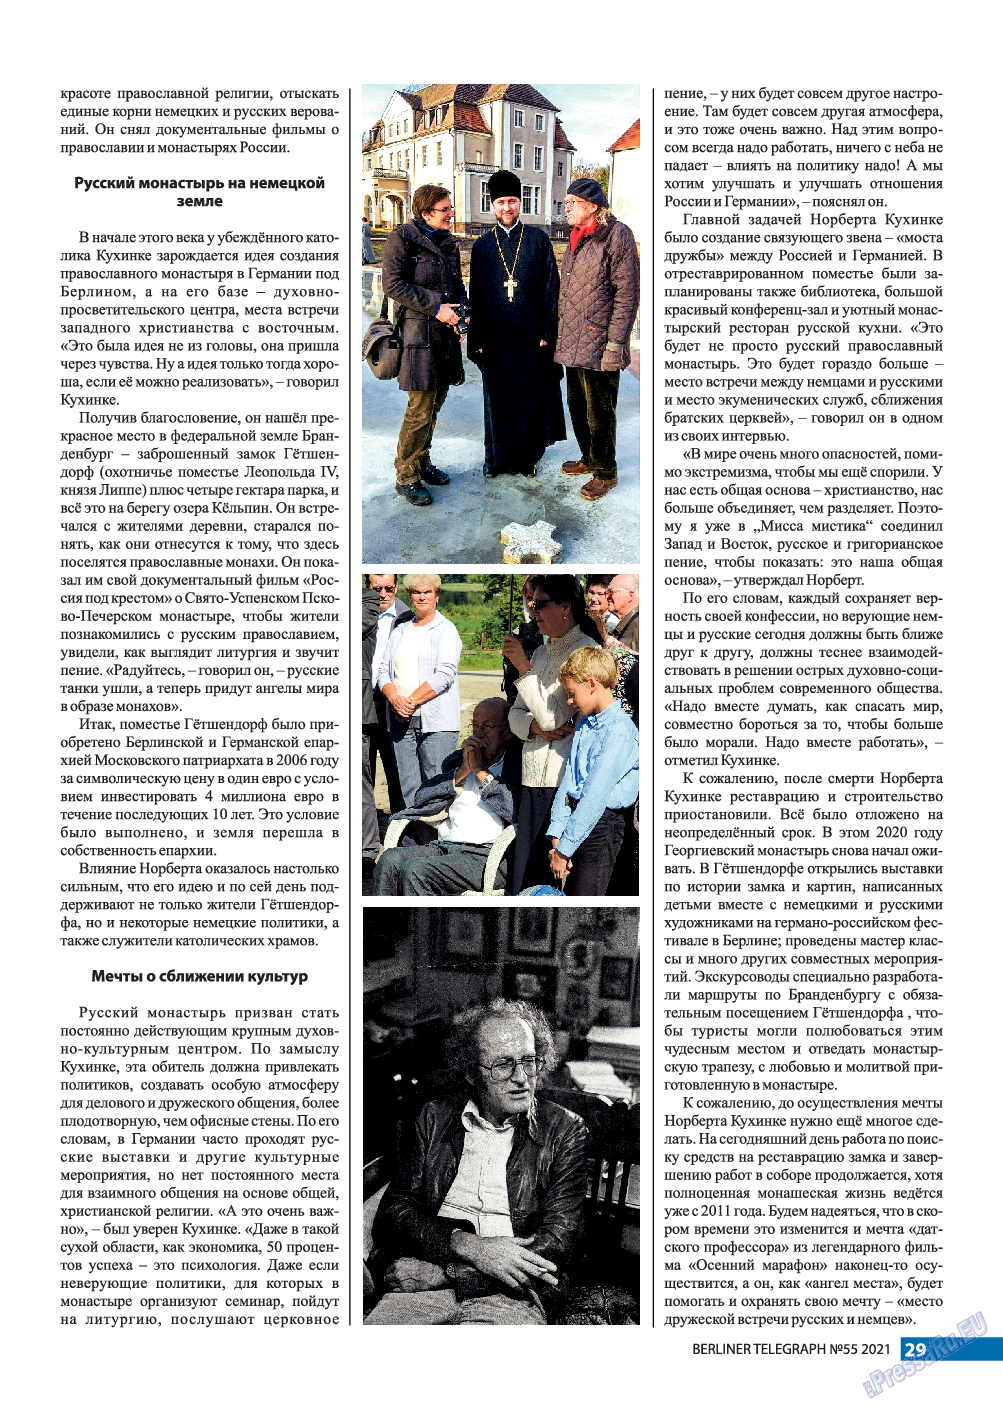 Берлинский телеграф, журнал. 2021 №55 стр.29